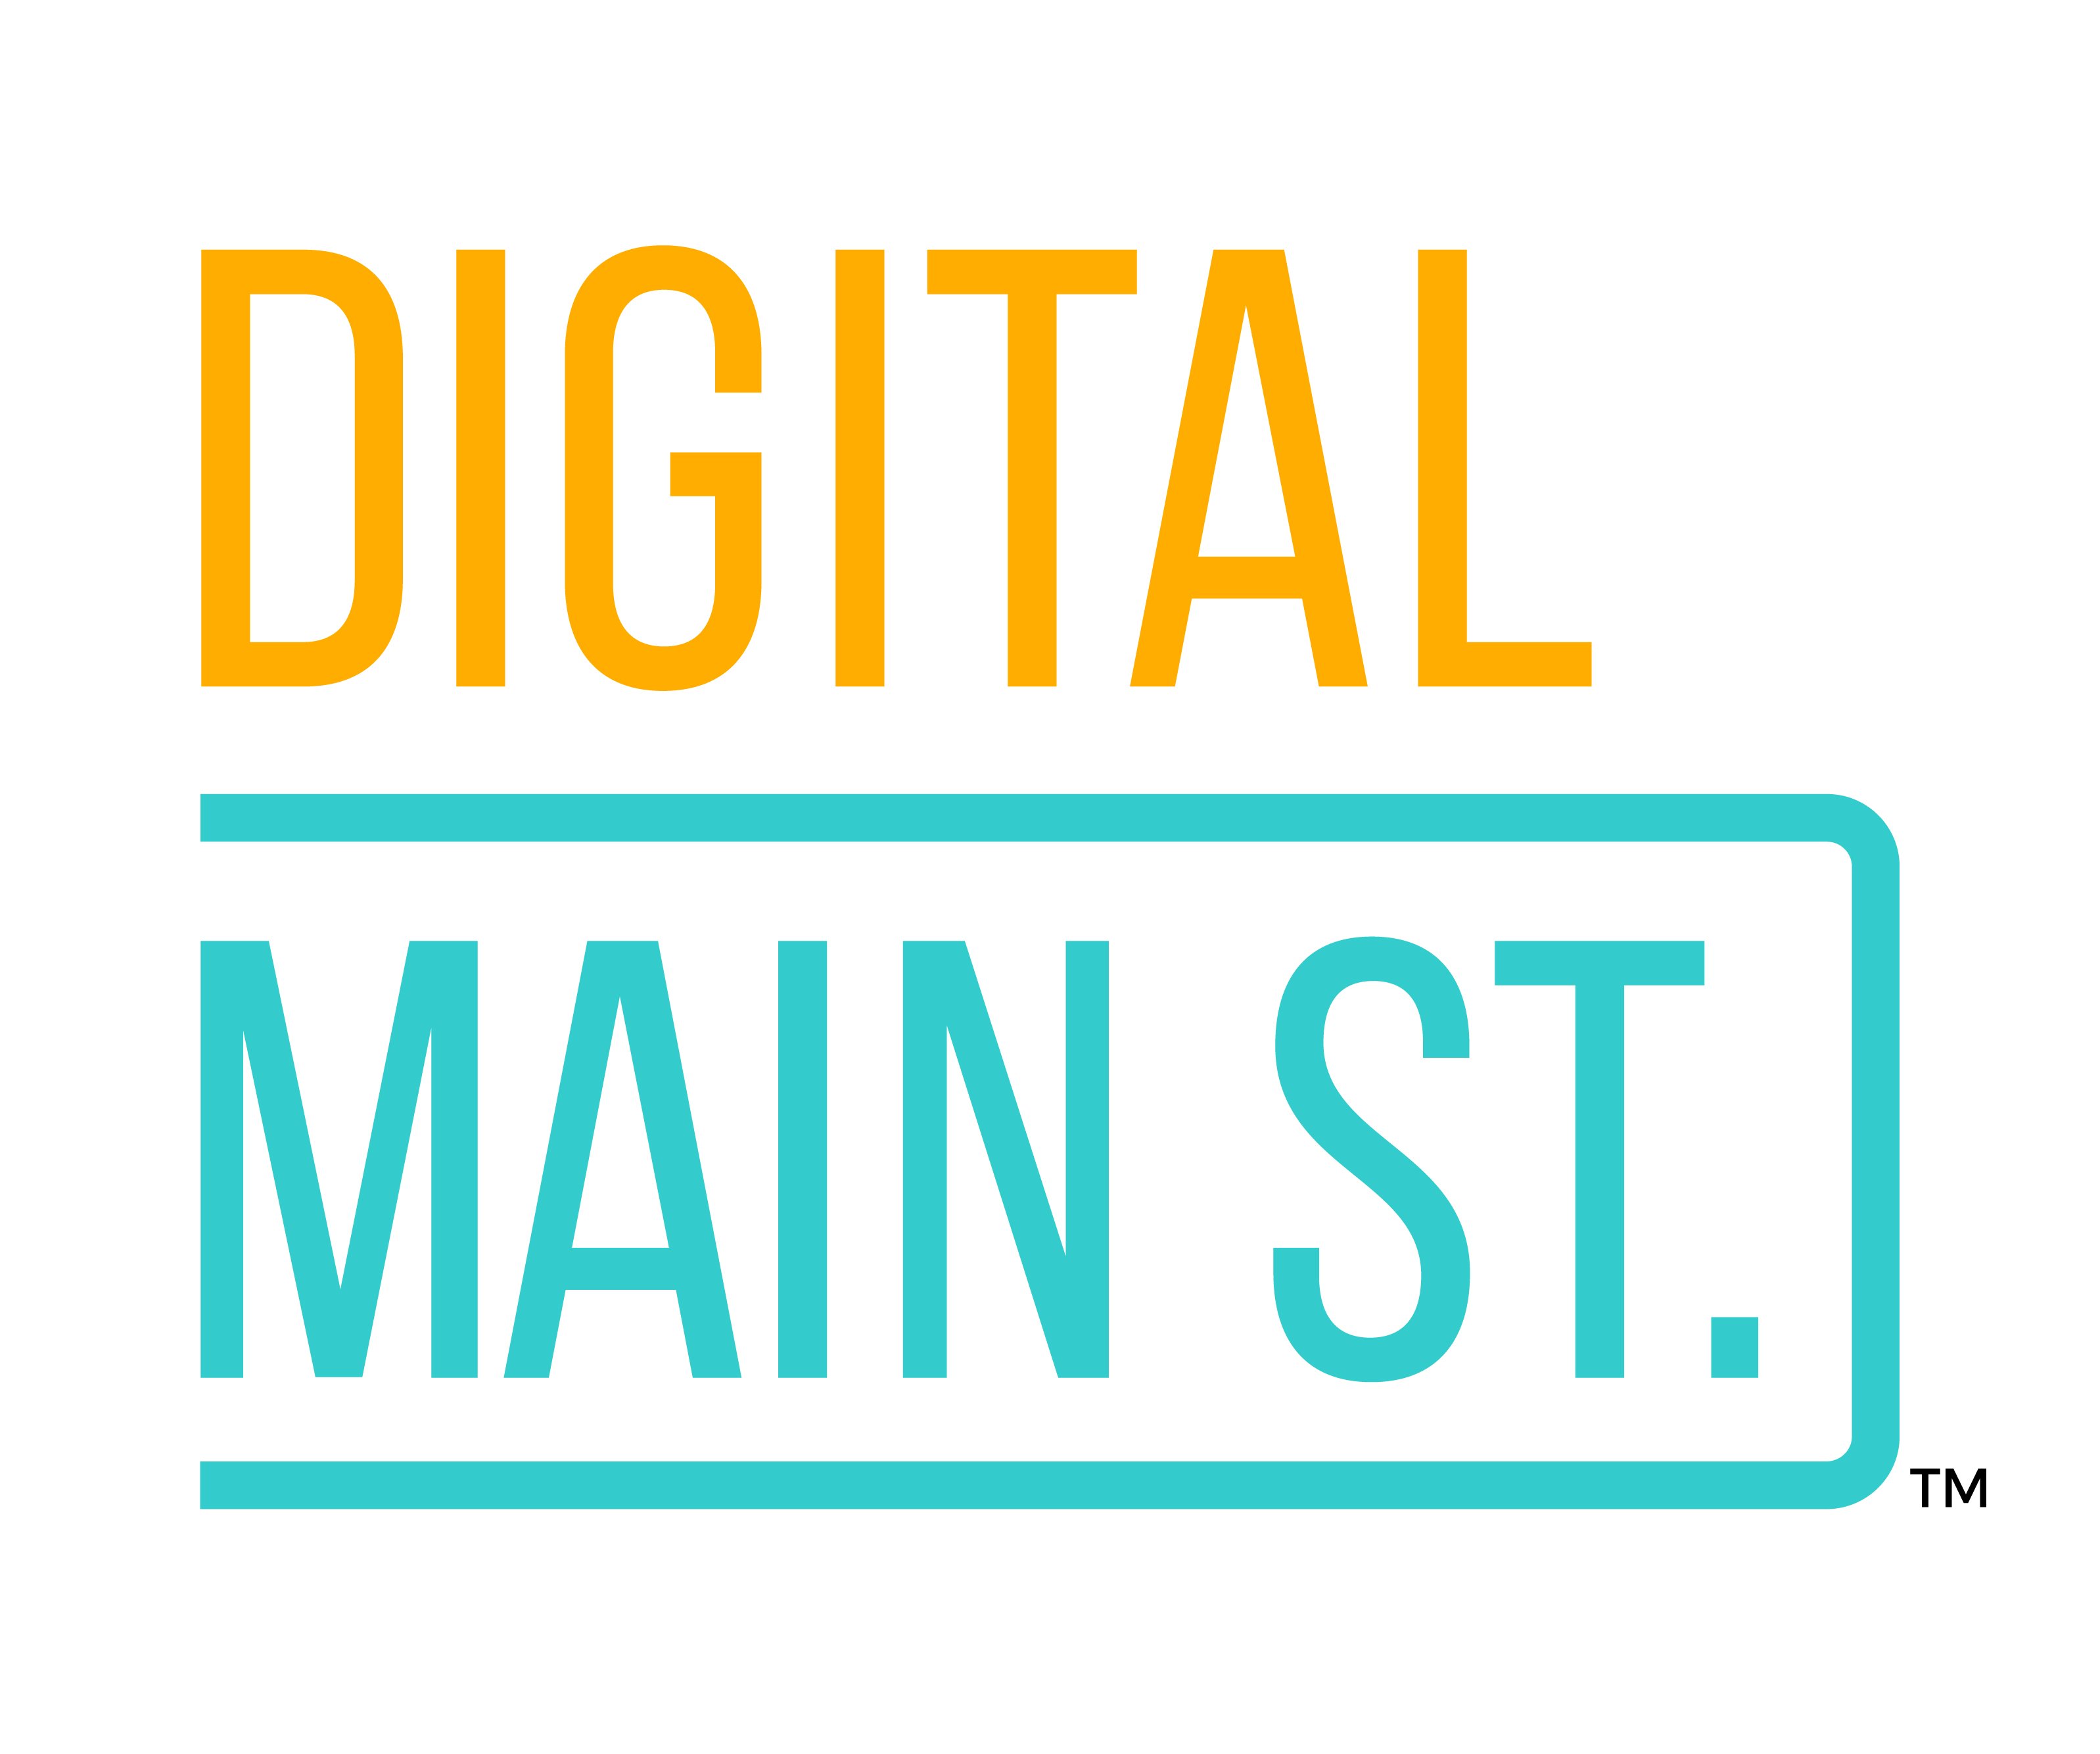 Digital mainstreet logo